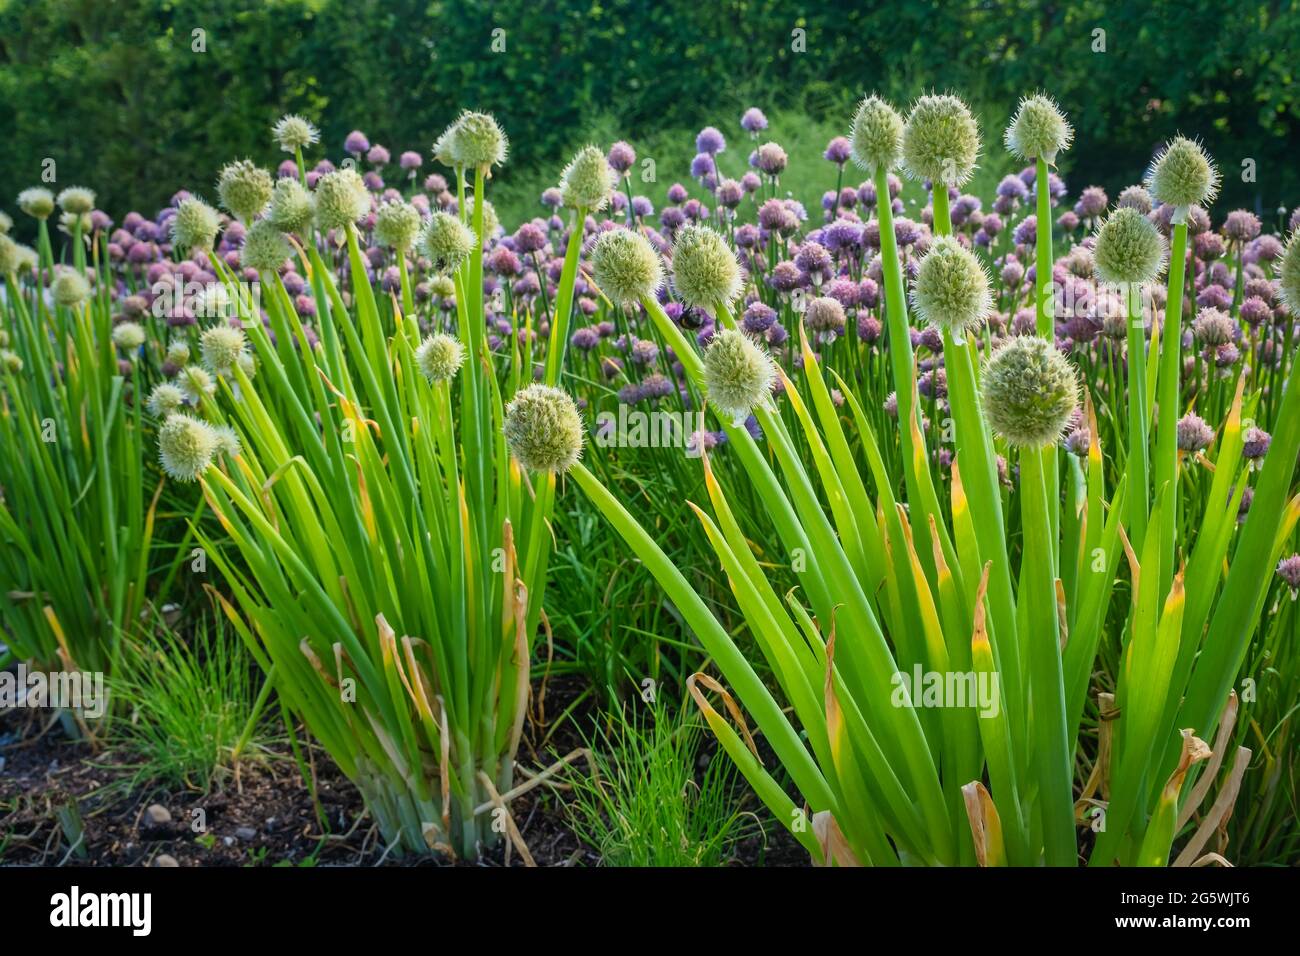 Allium Fistulosum leek in full flower Stock Photo